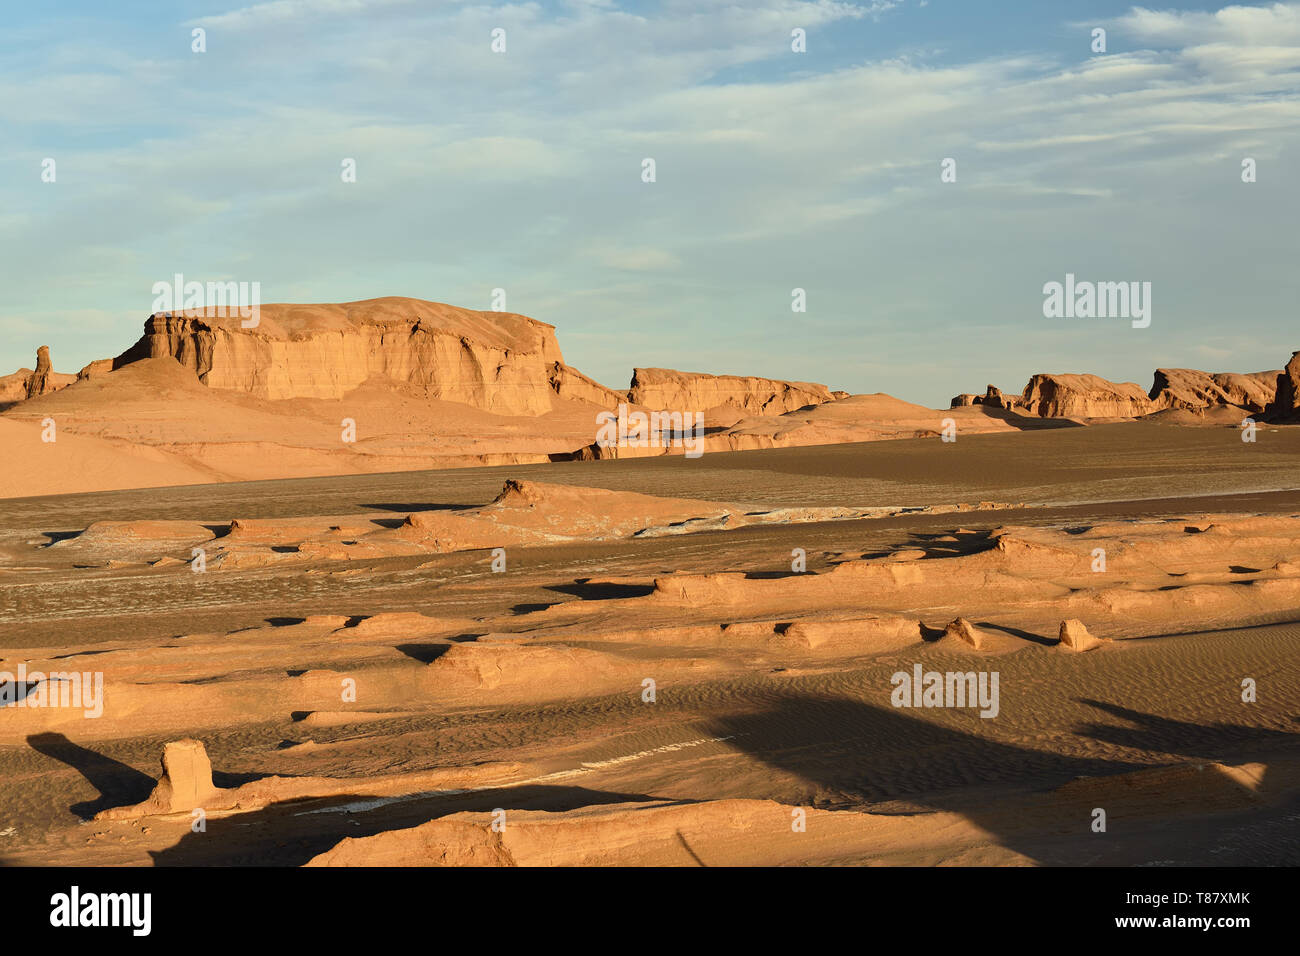 Les formations rocheuses gigantesques sur le désert du Lut - Dasht-e-Lut les plus chauds et plus arides de la planète, localiser près de Kerman, Iran. Banque D'Images